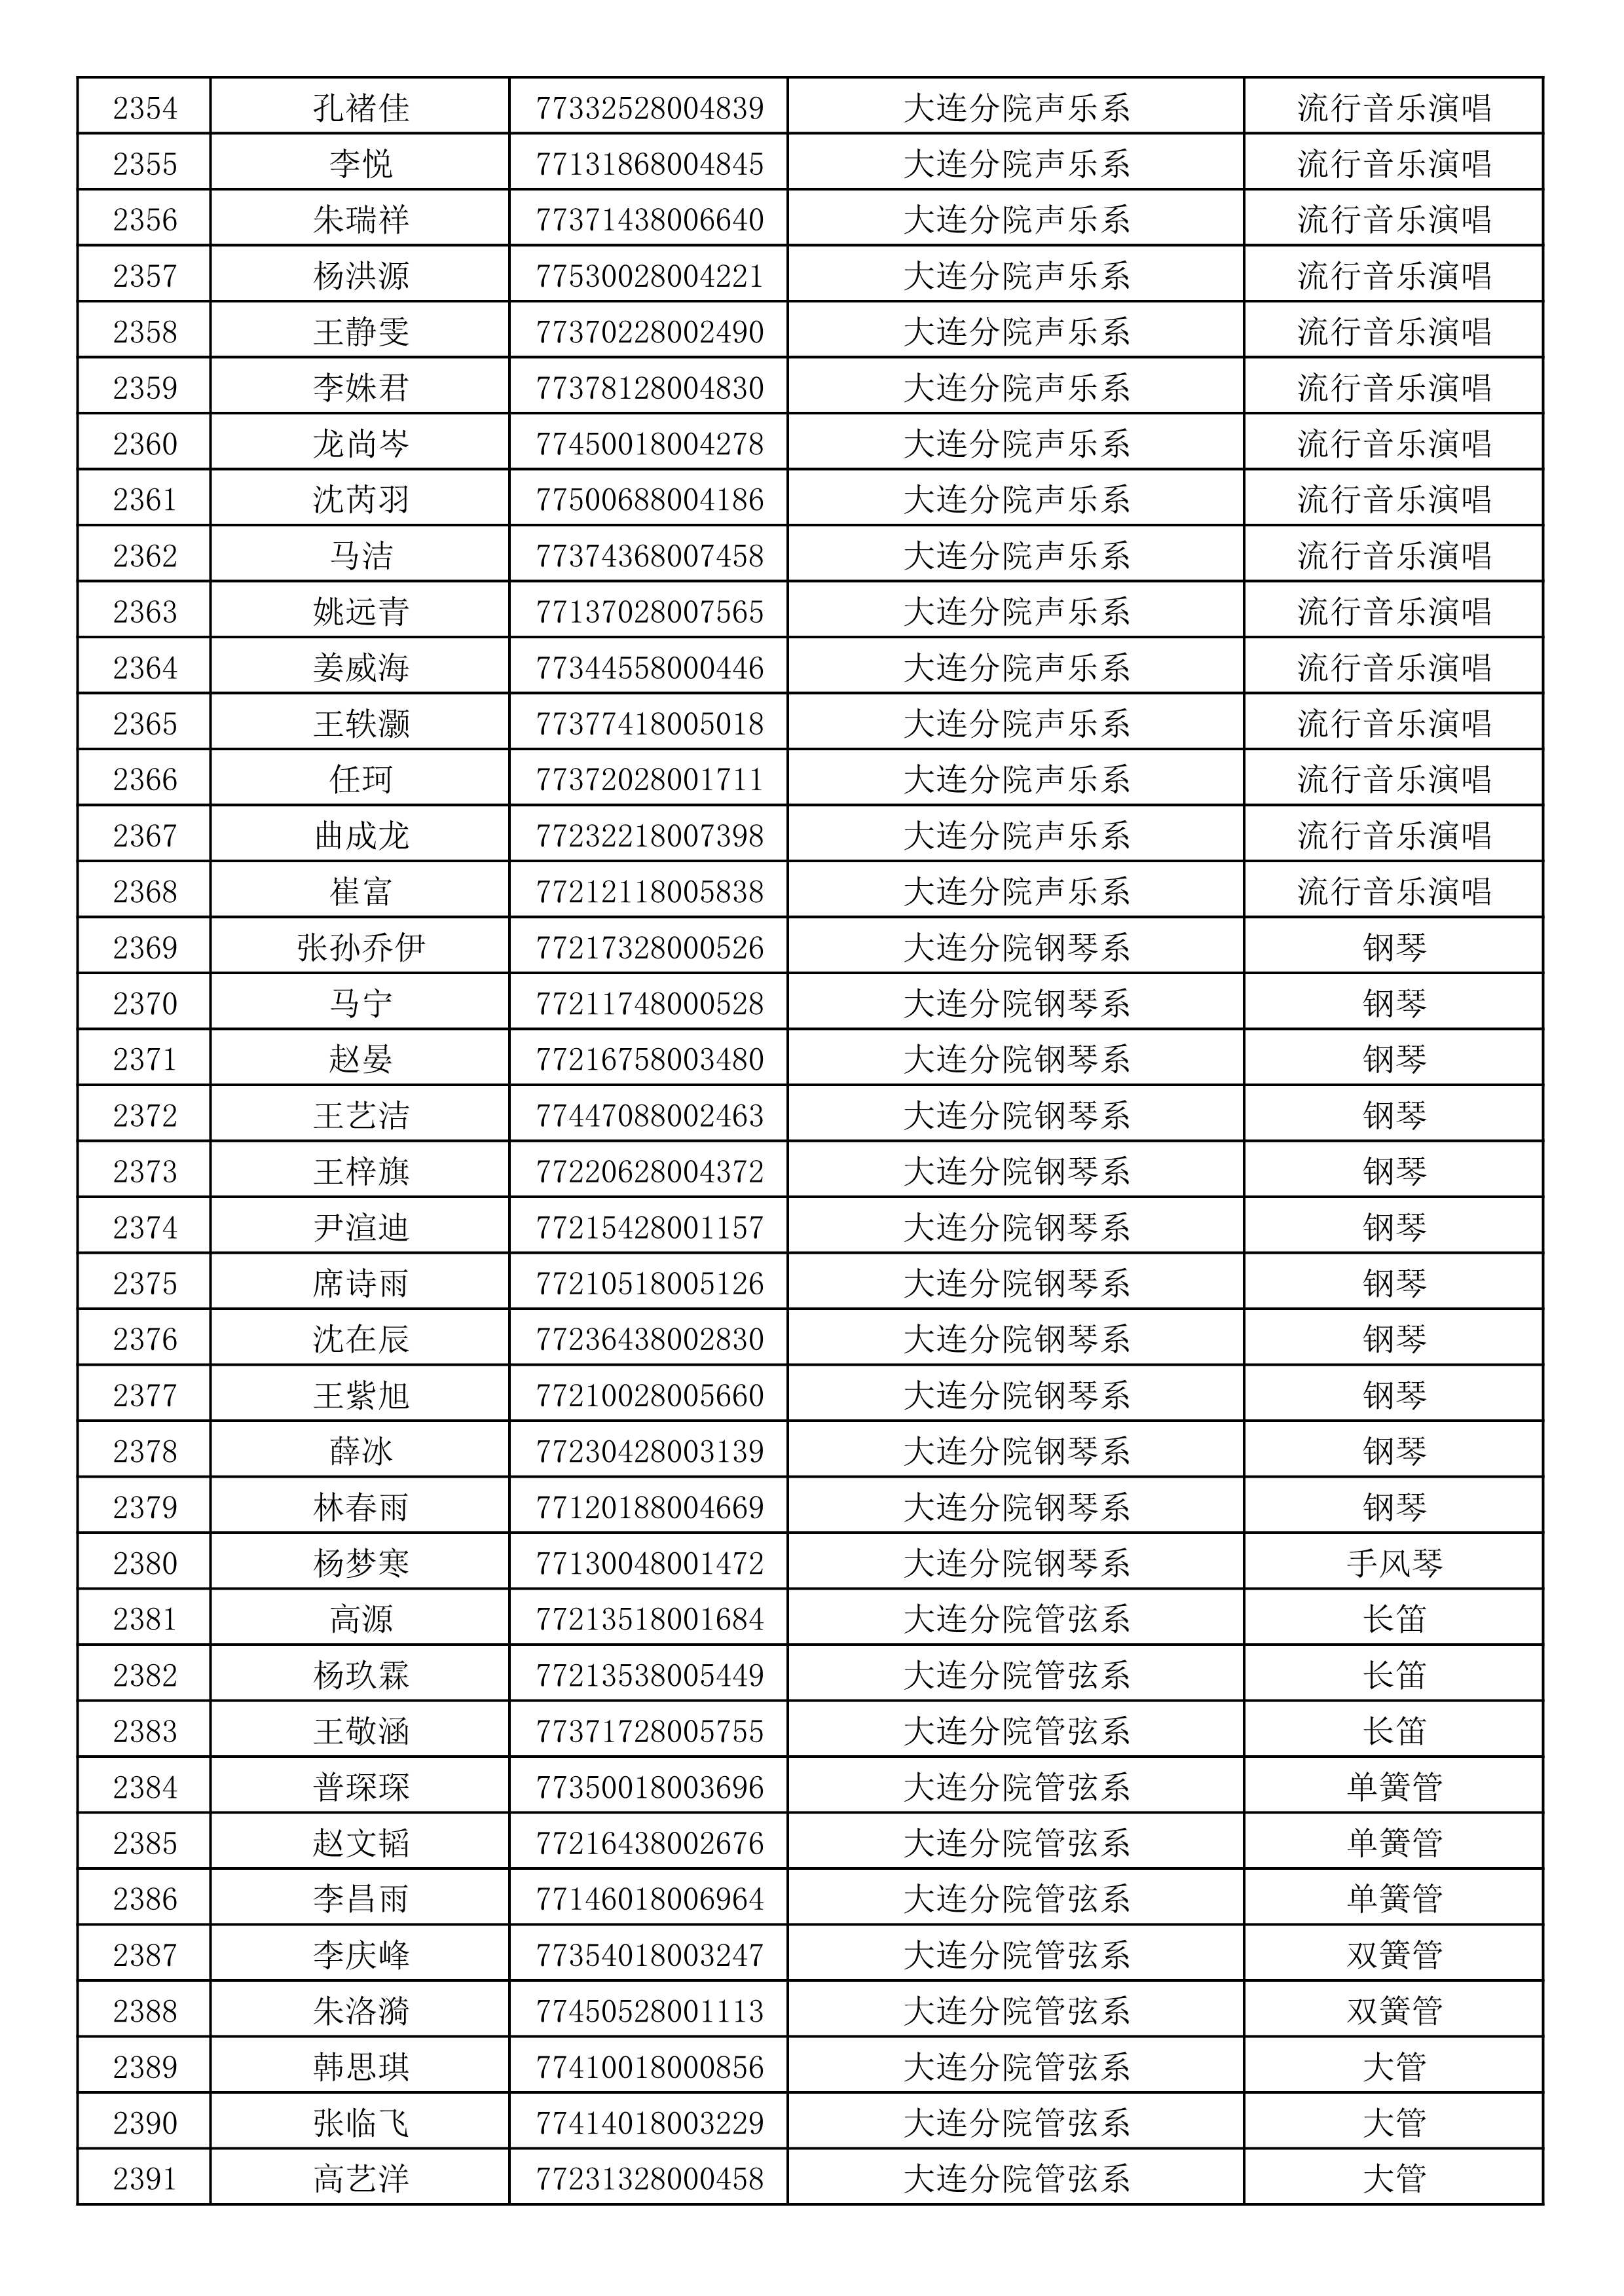 沈阳音乐学院2019年本科招生考试初试合格名单_63.jpg